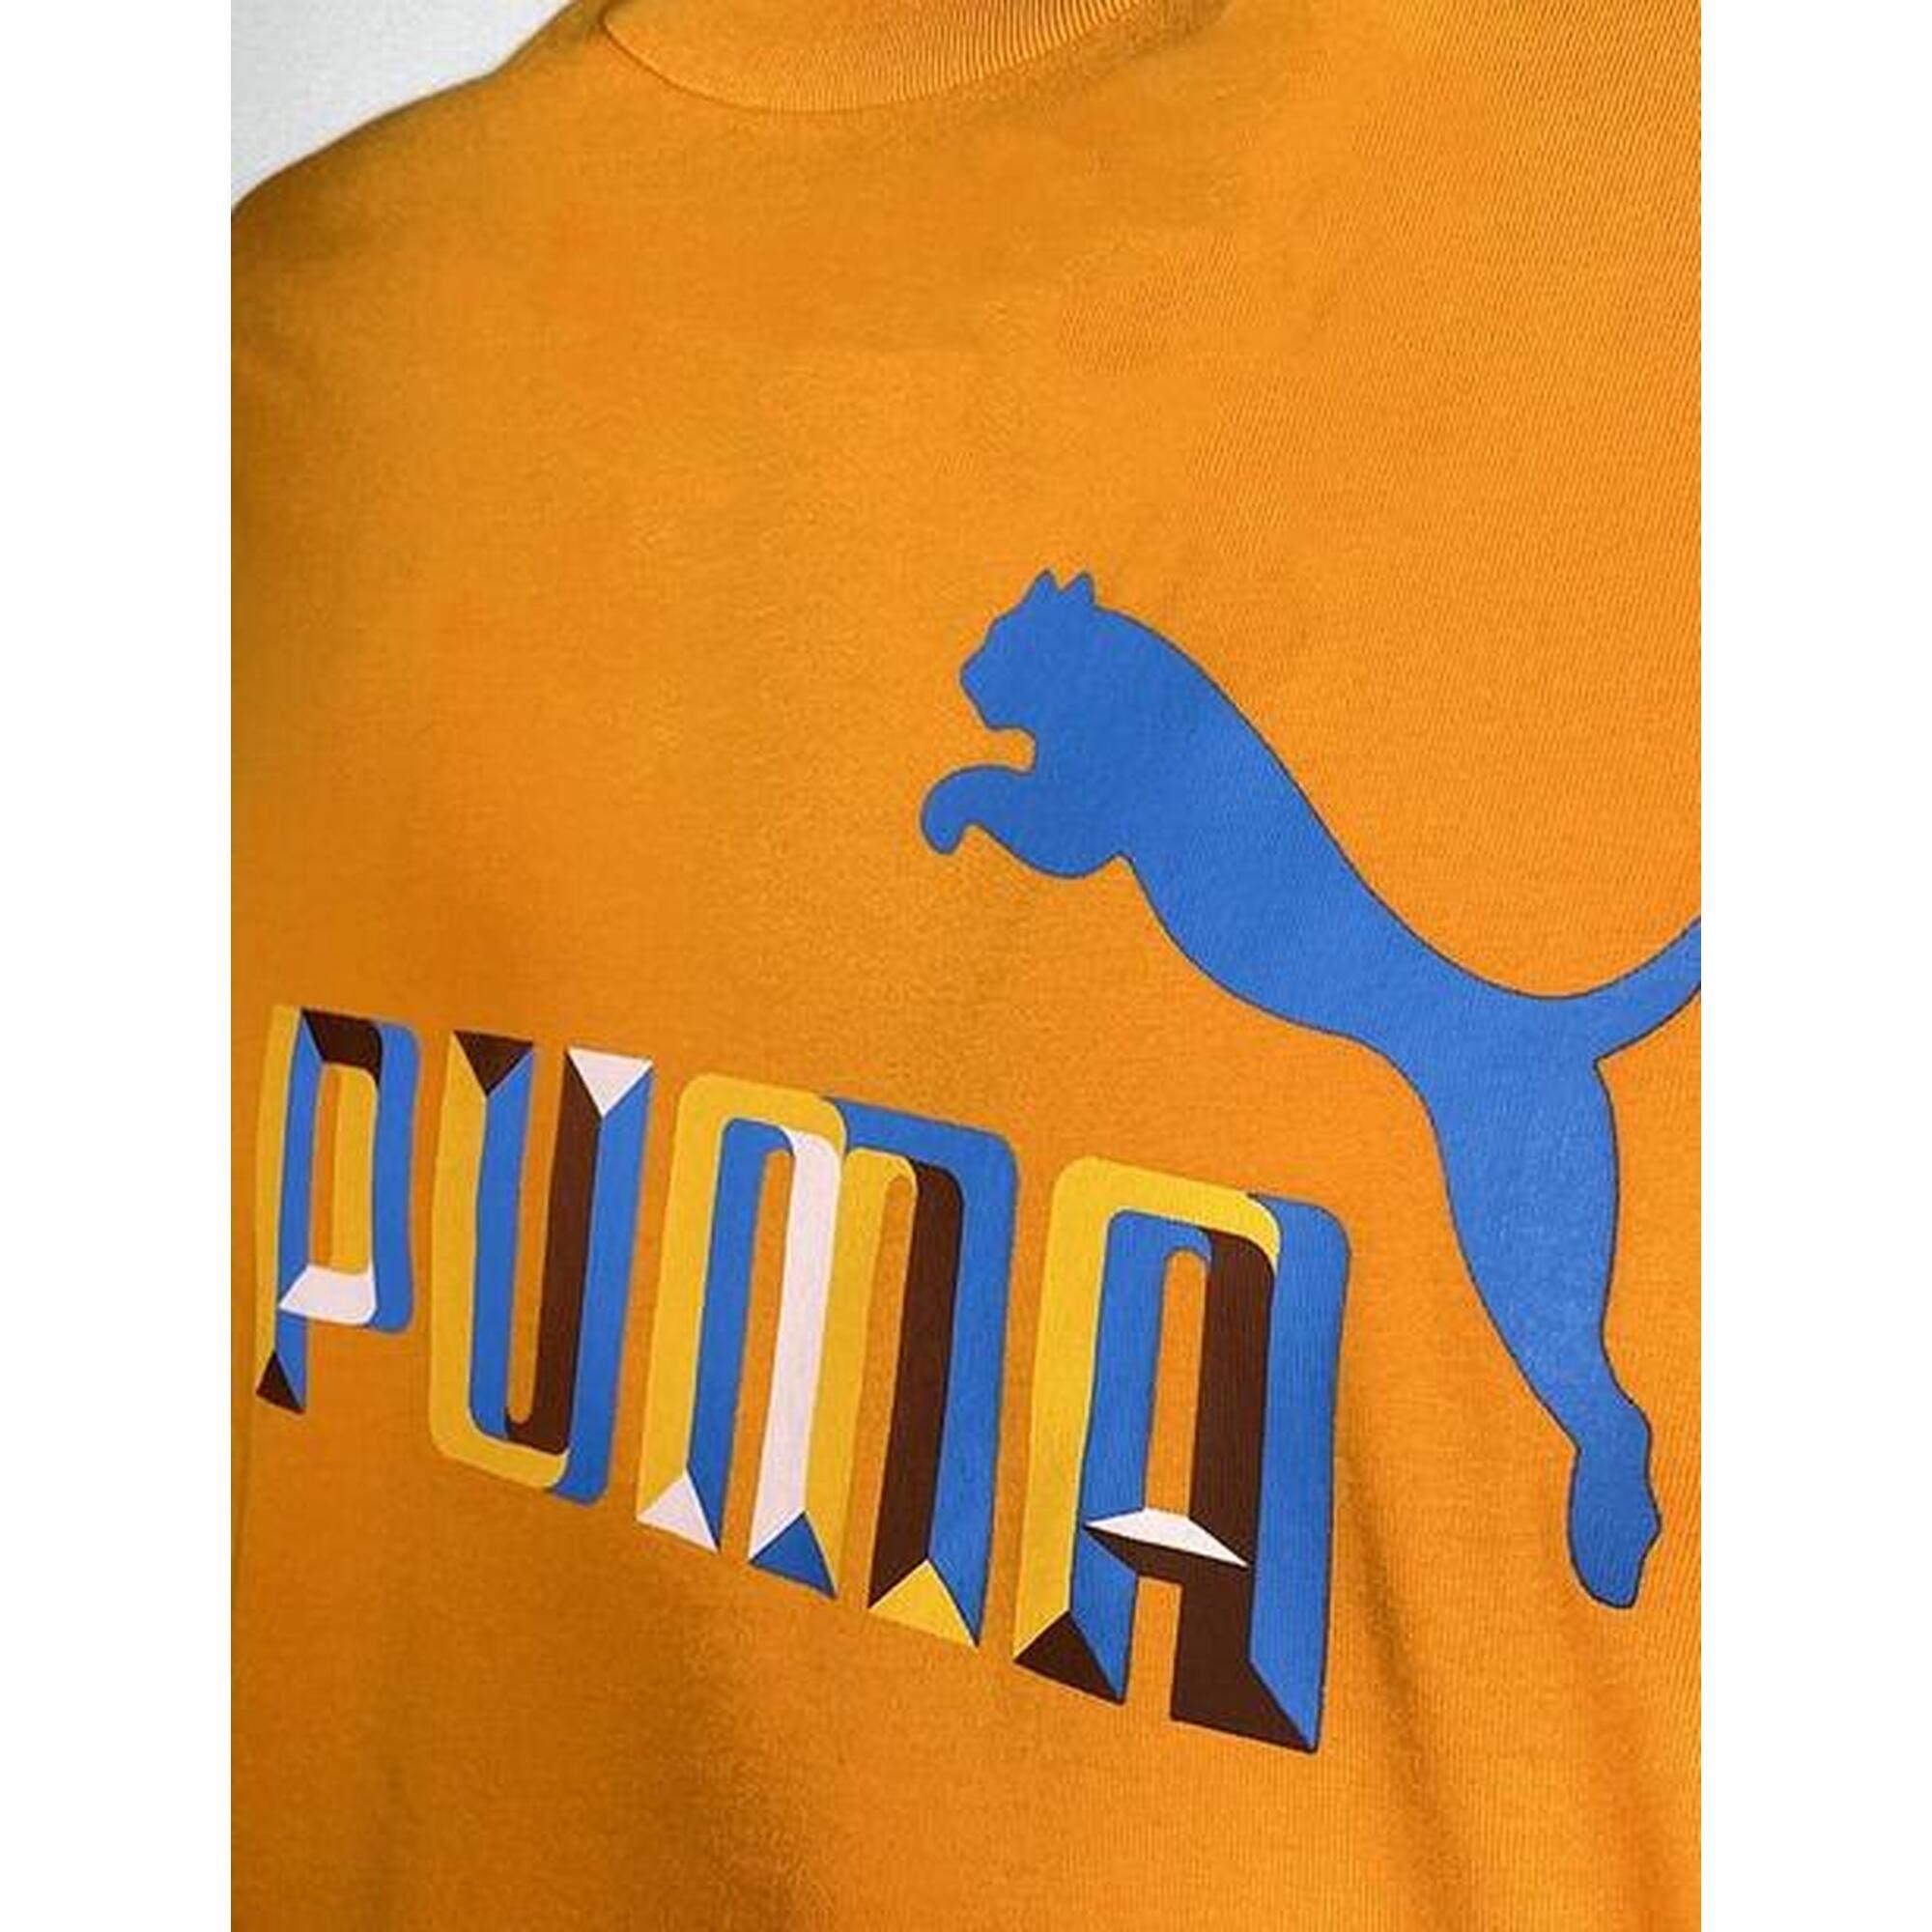 T-shirt uomo puma essential logo - arancio